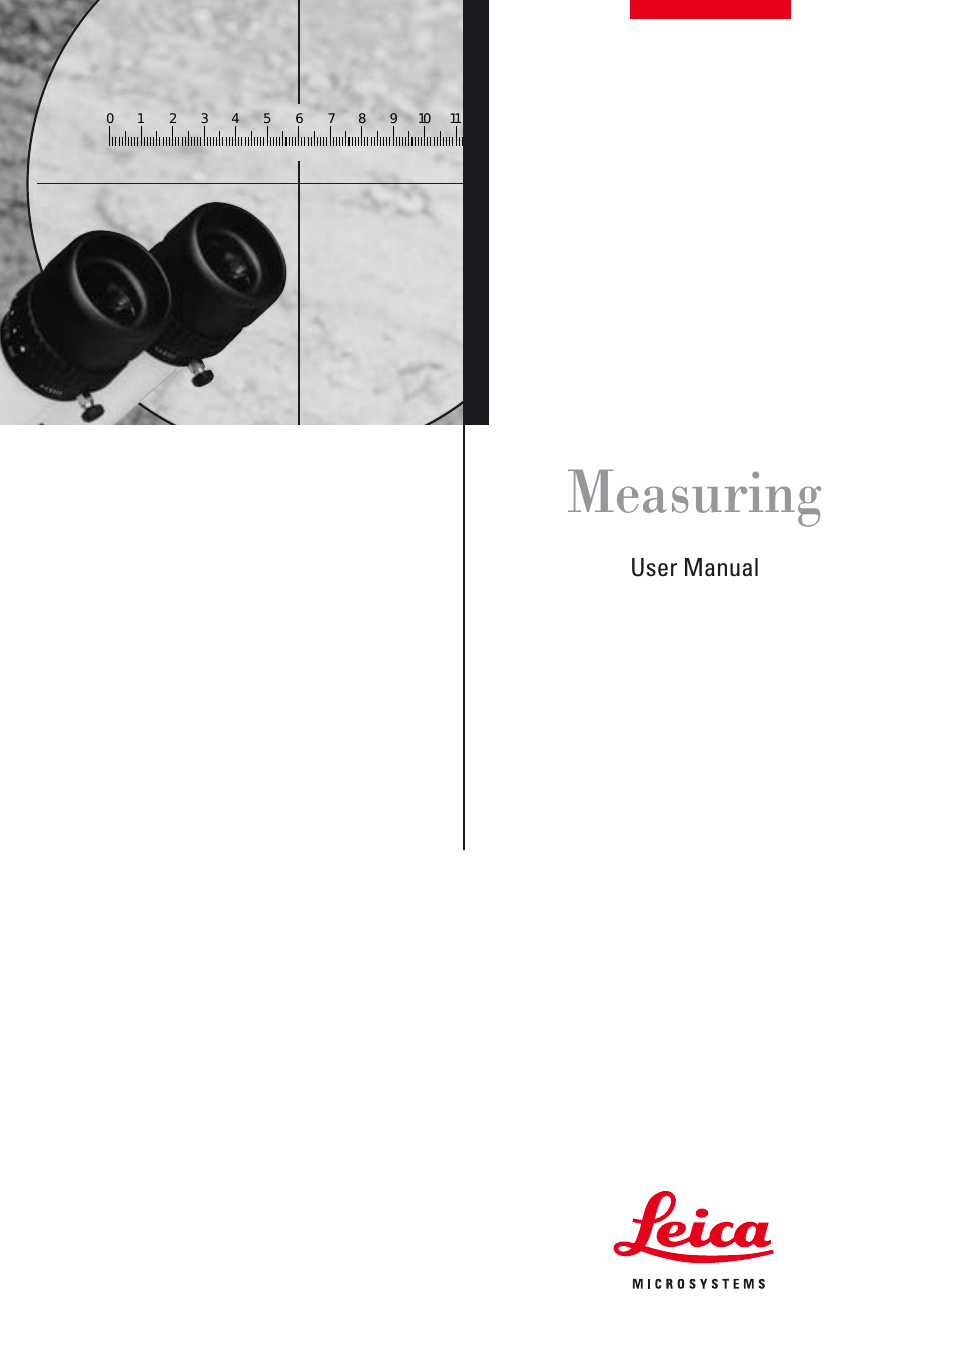 M80 Measuring